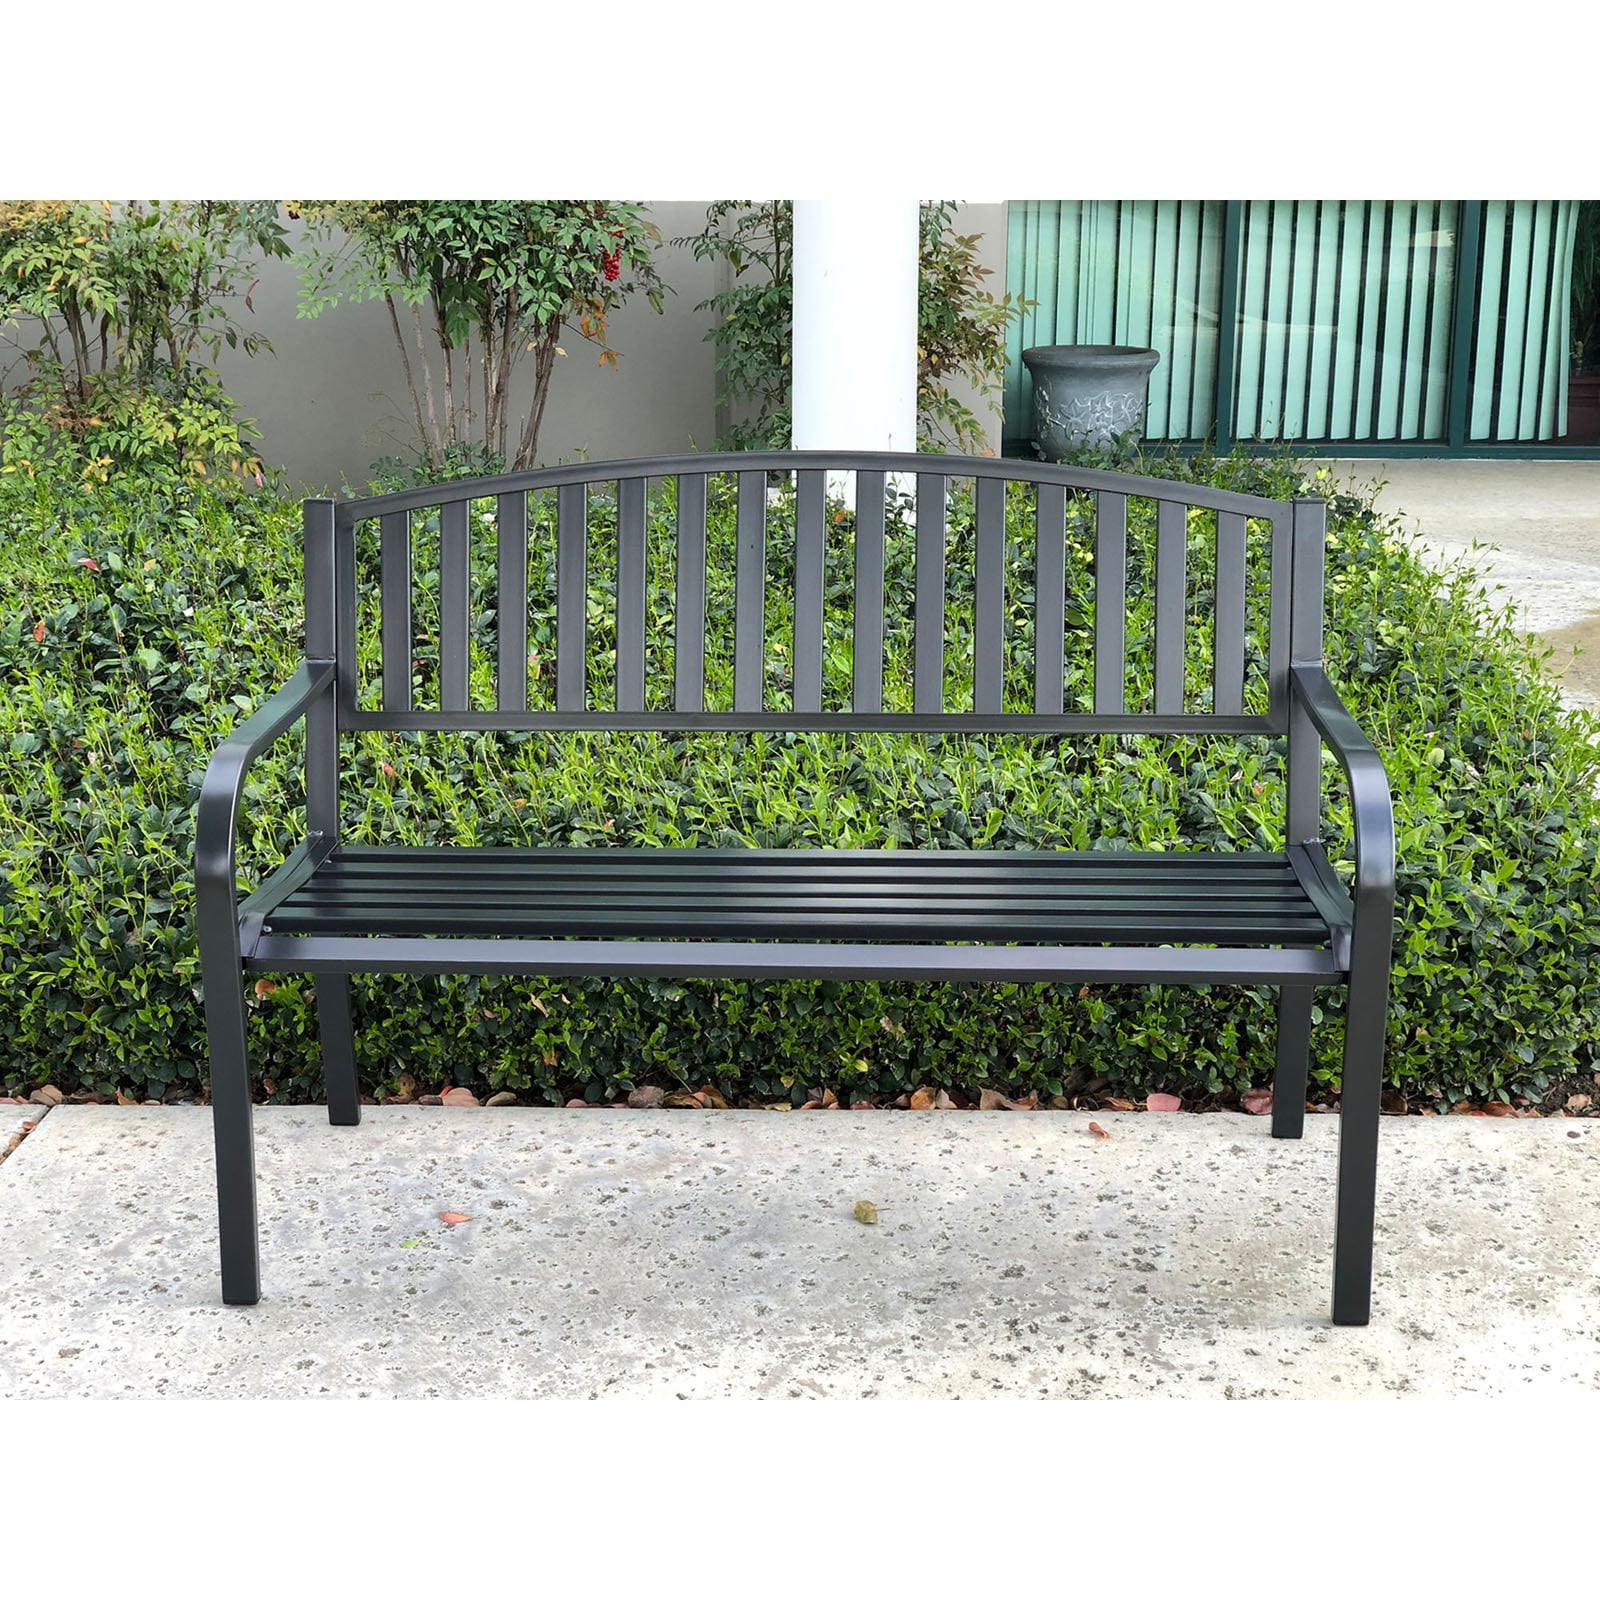 Black outdoor bench